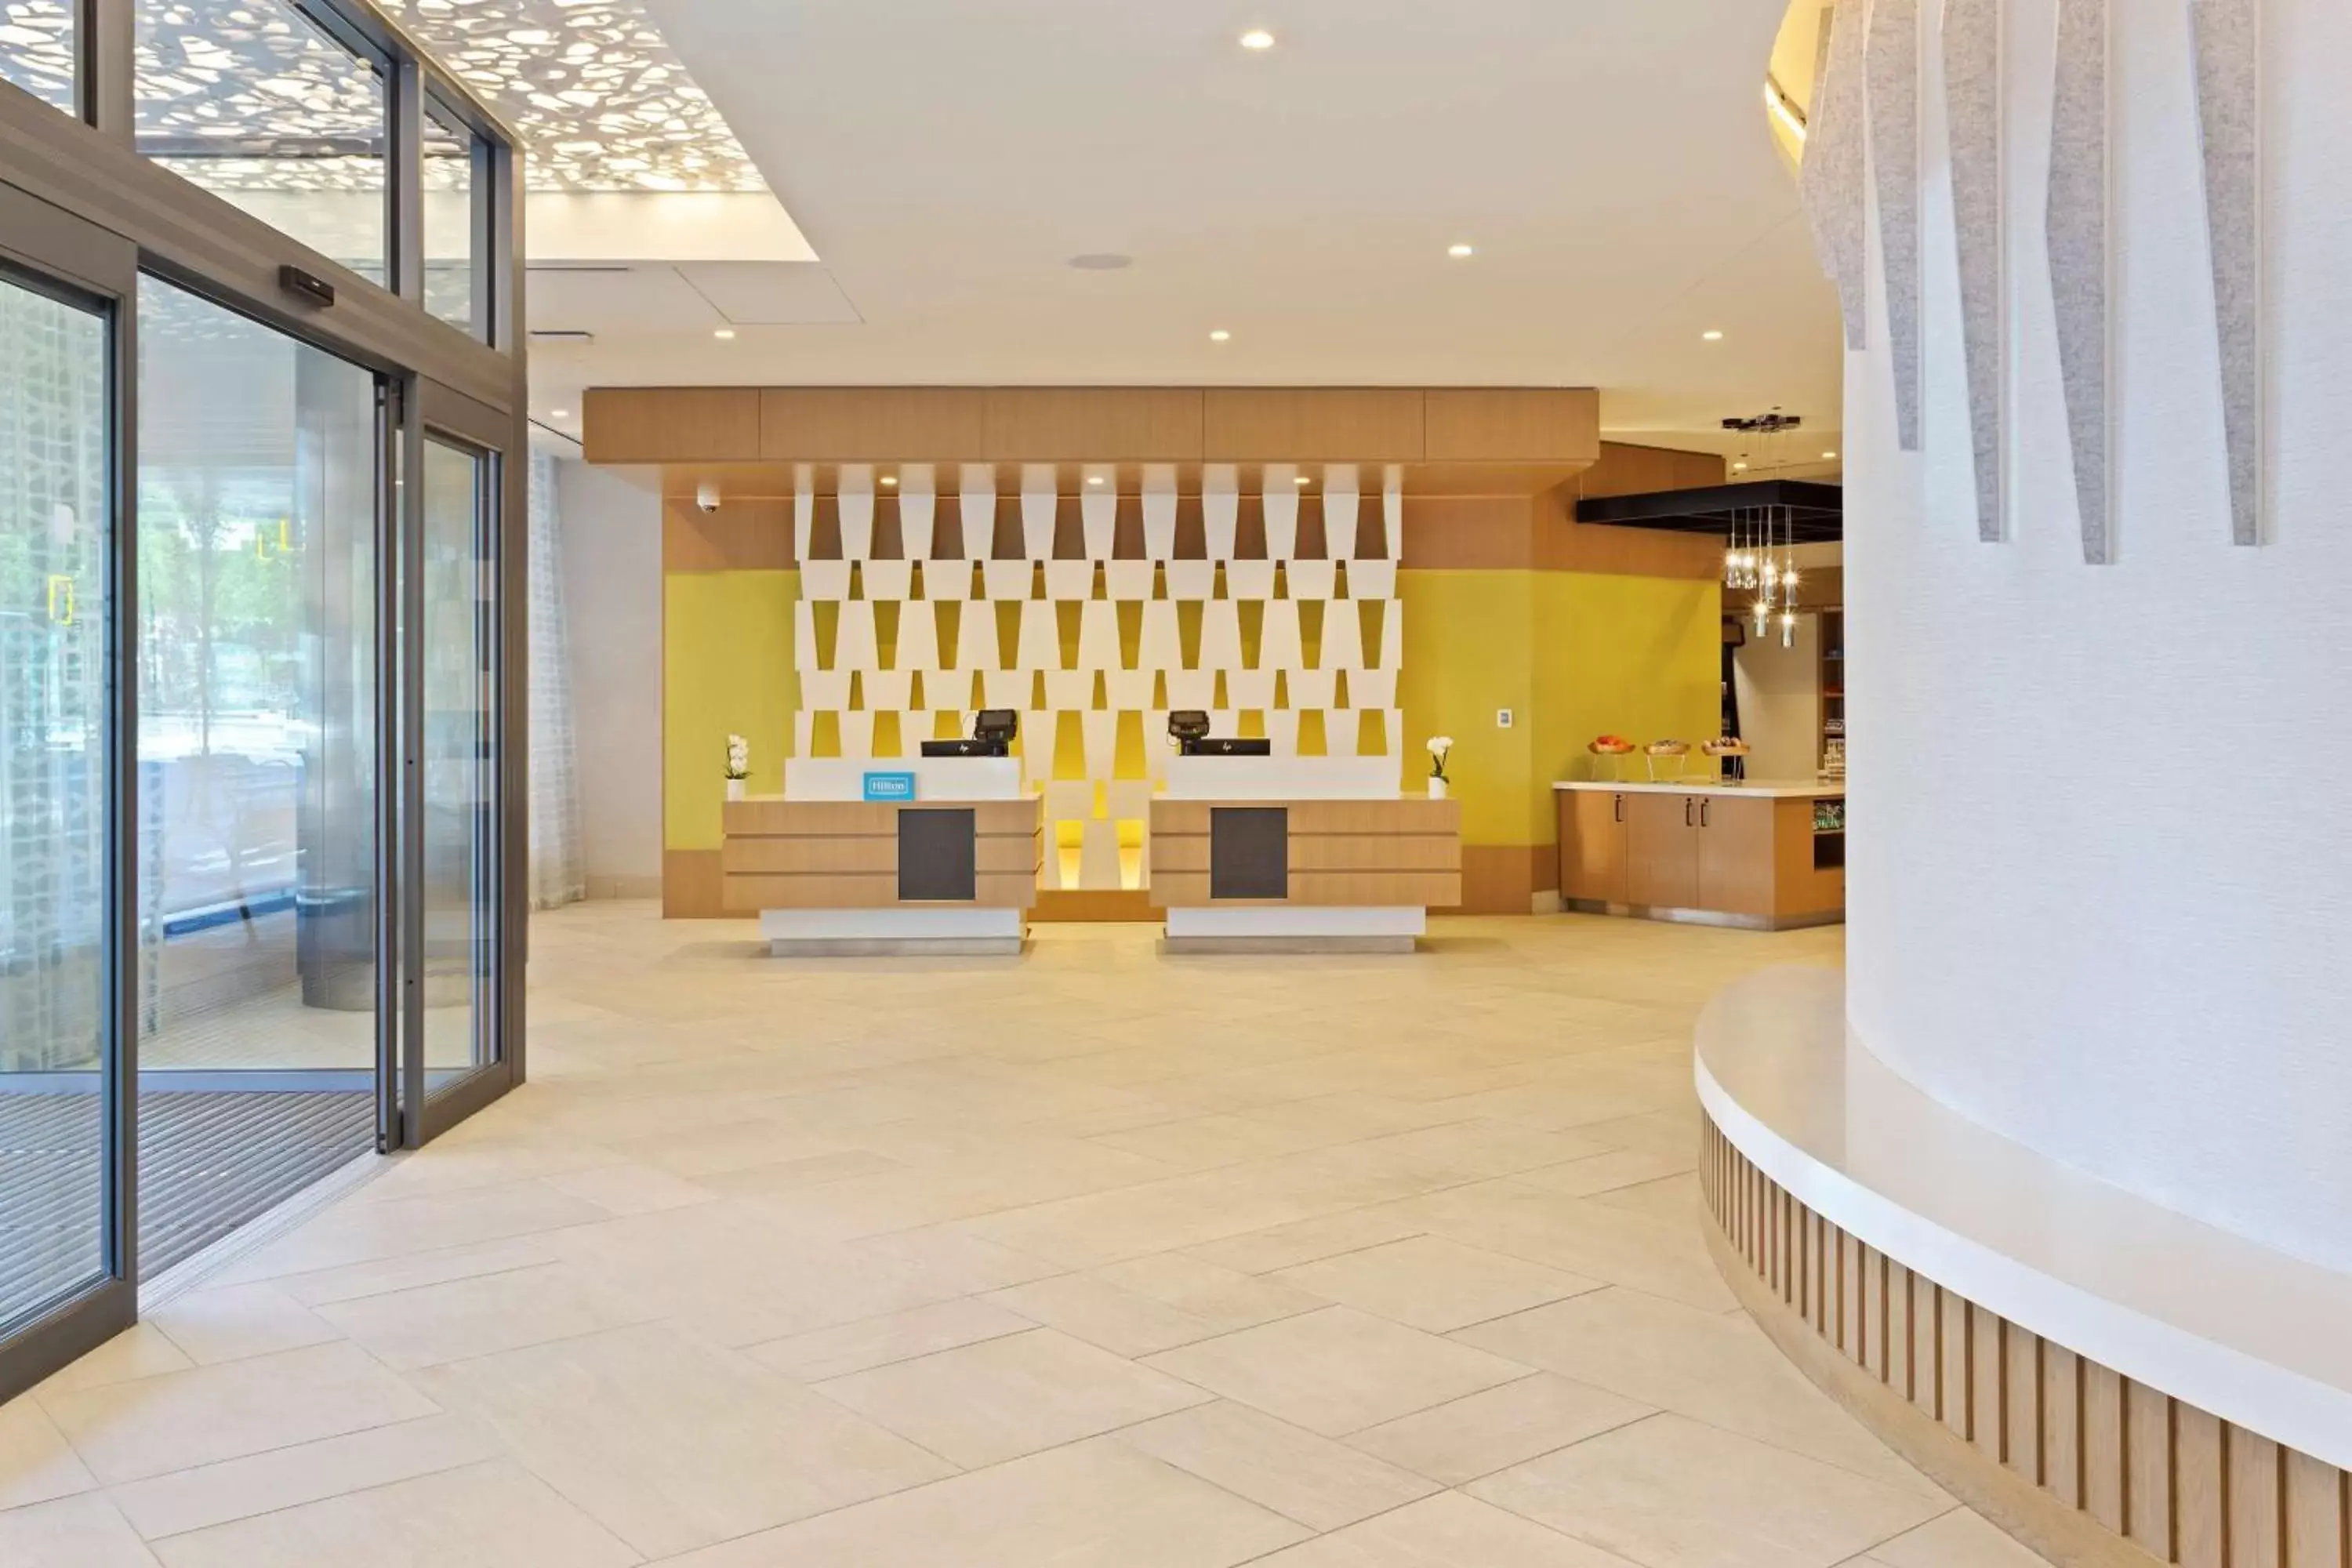 Lobby or reception, Lobby/Reception in Hilton Garden Inn Boston Brookline, Ma